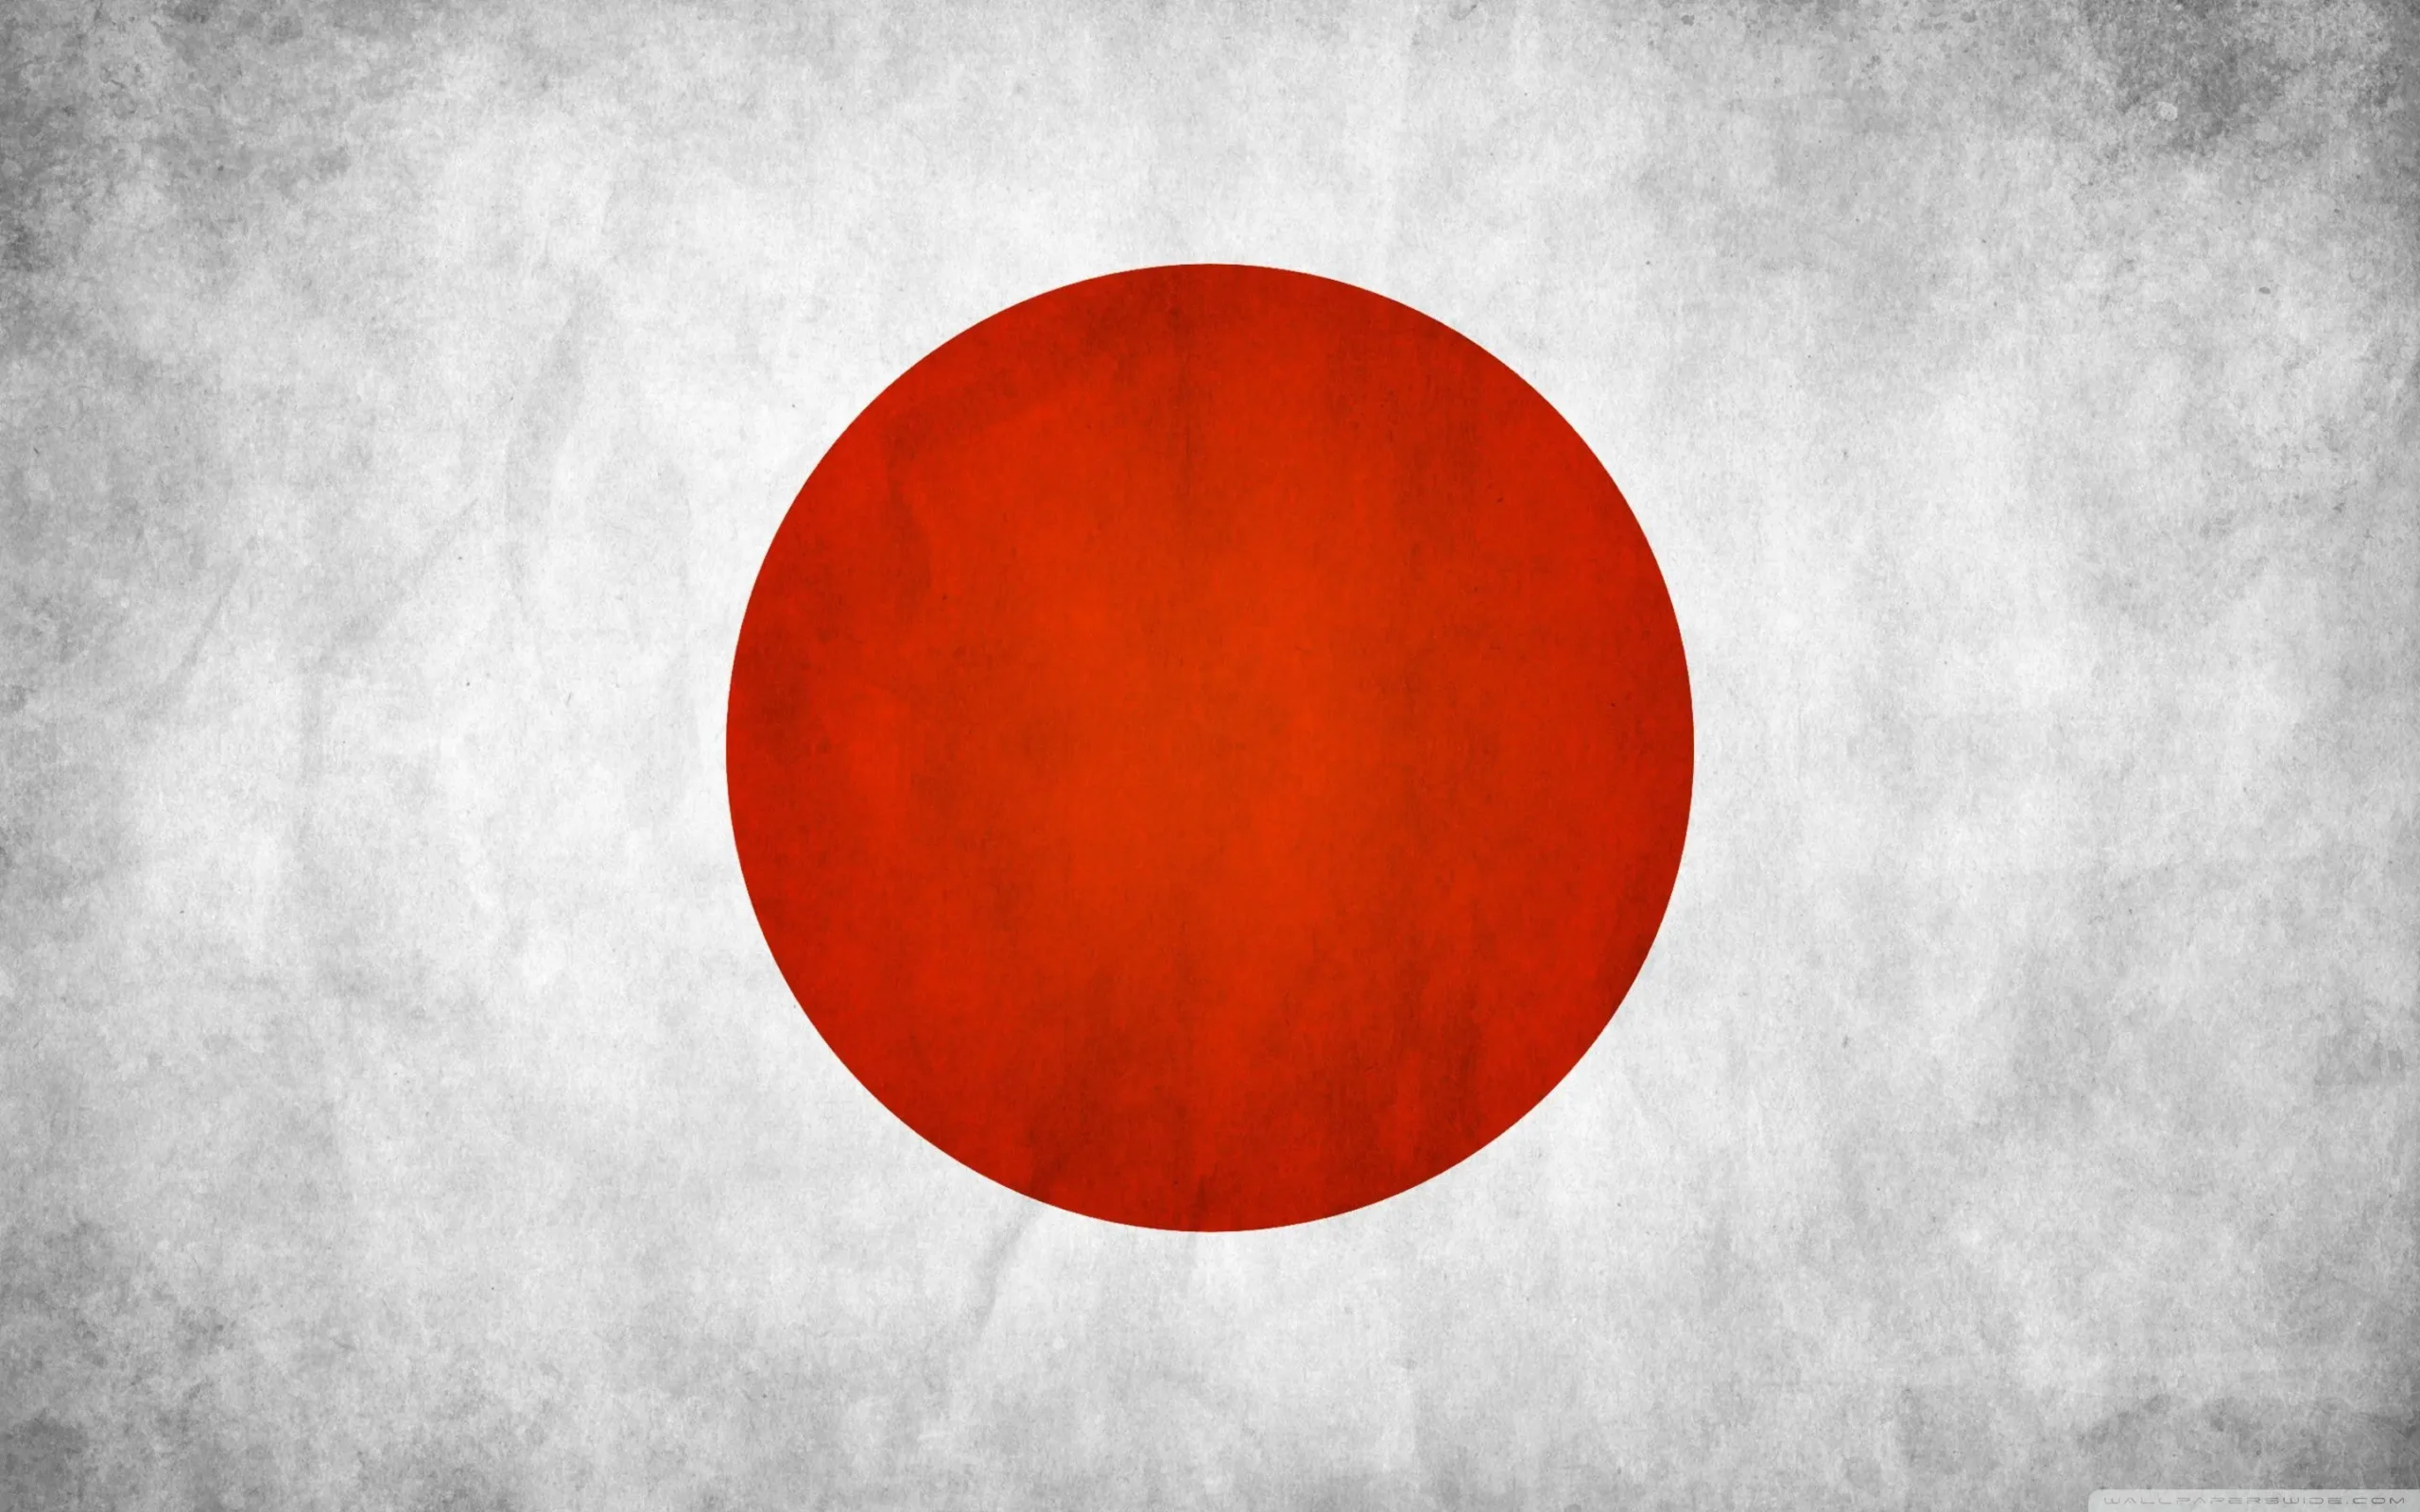 Japan: $5.06 Trillion